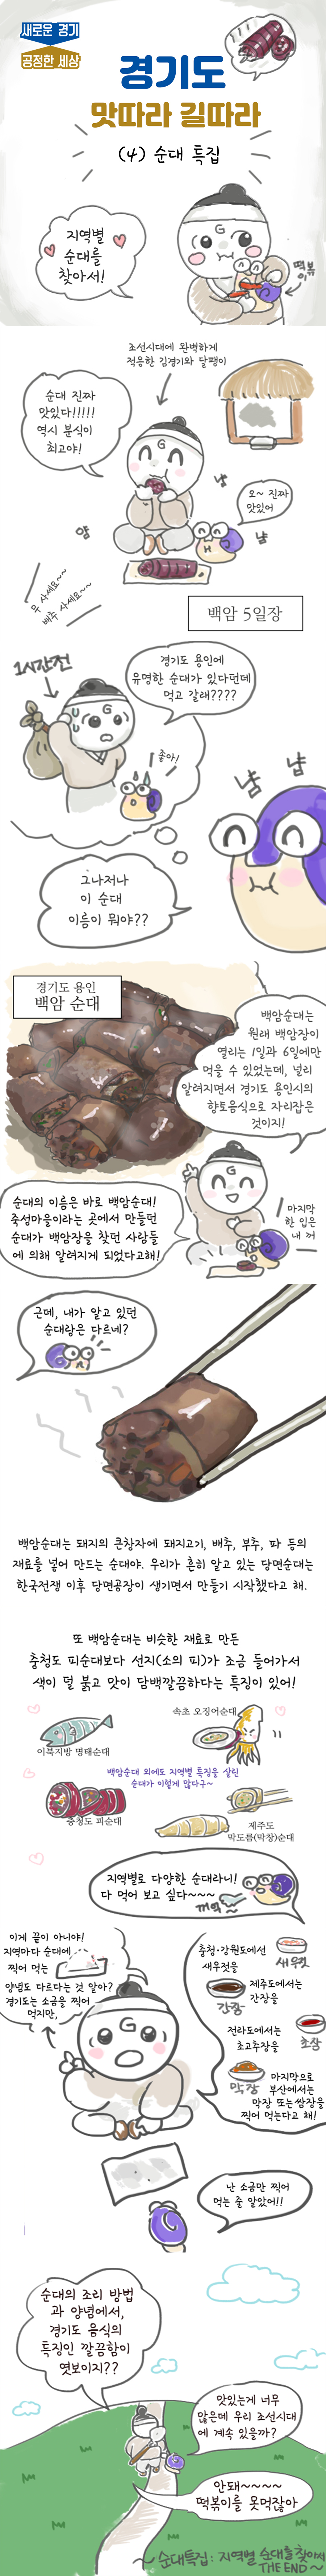 경기도 맛따라 길따라! <순대특집: 지역별 순대를 찾아서>